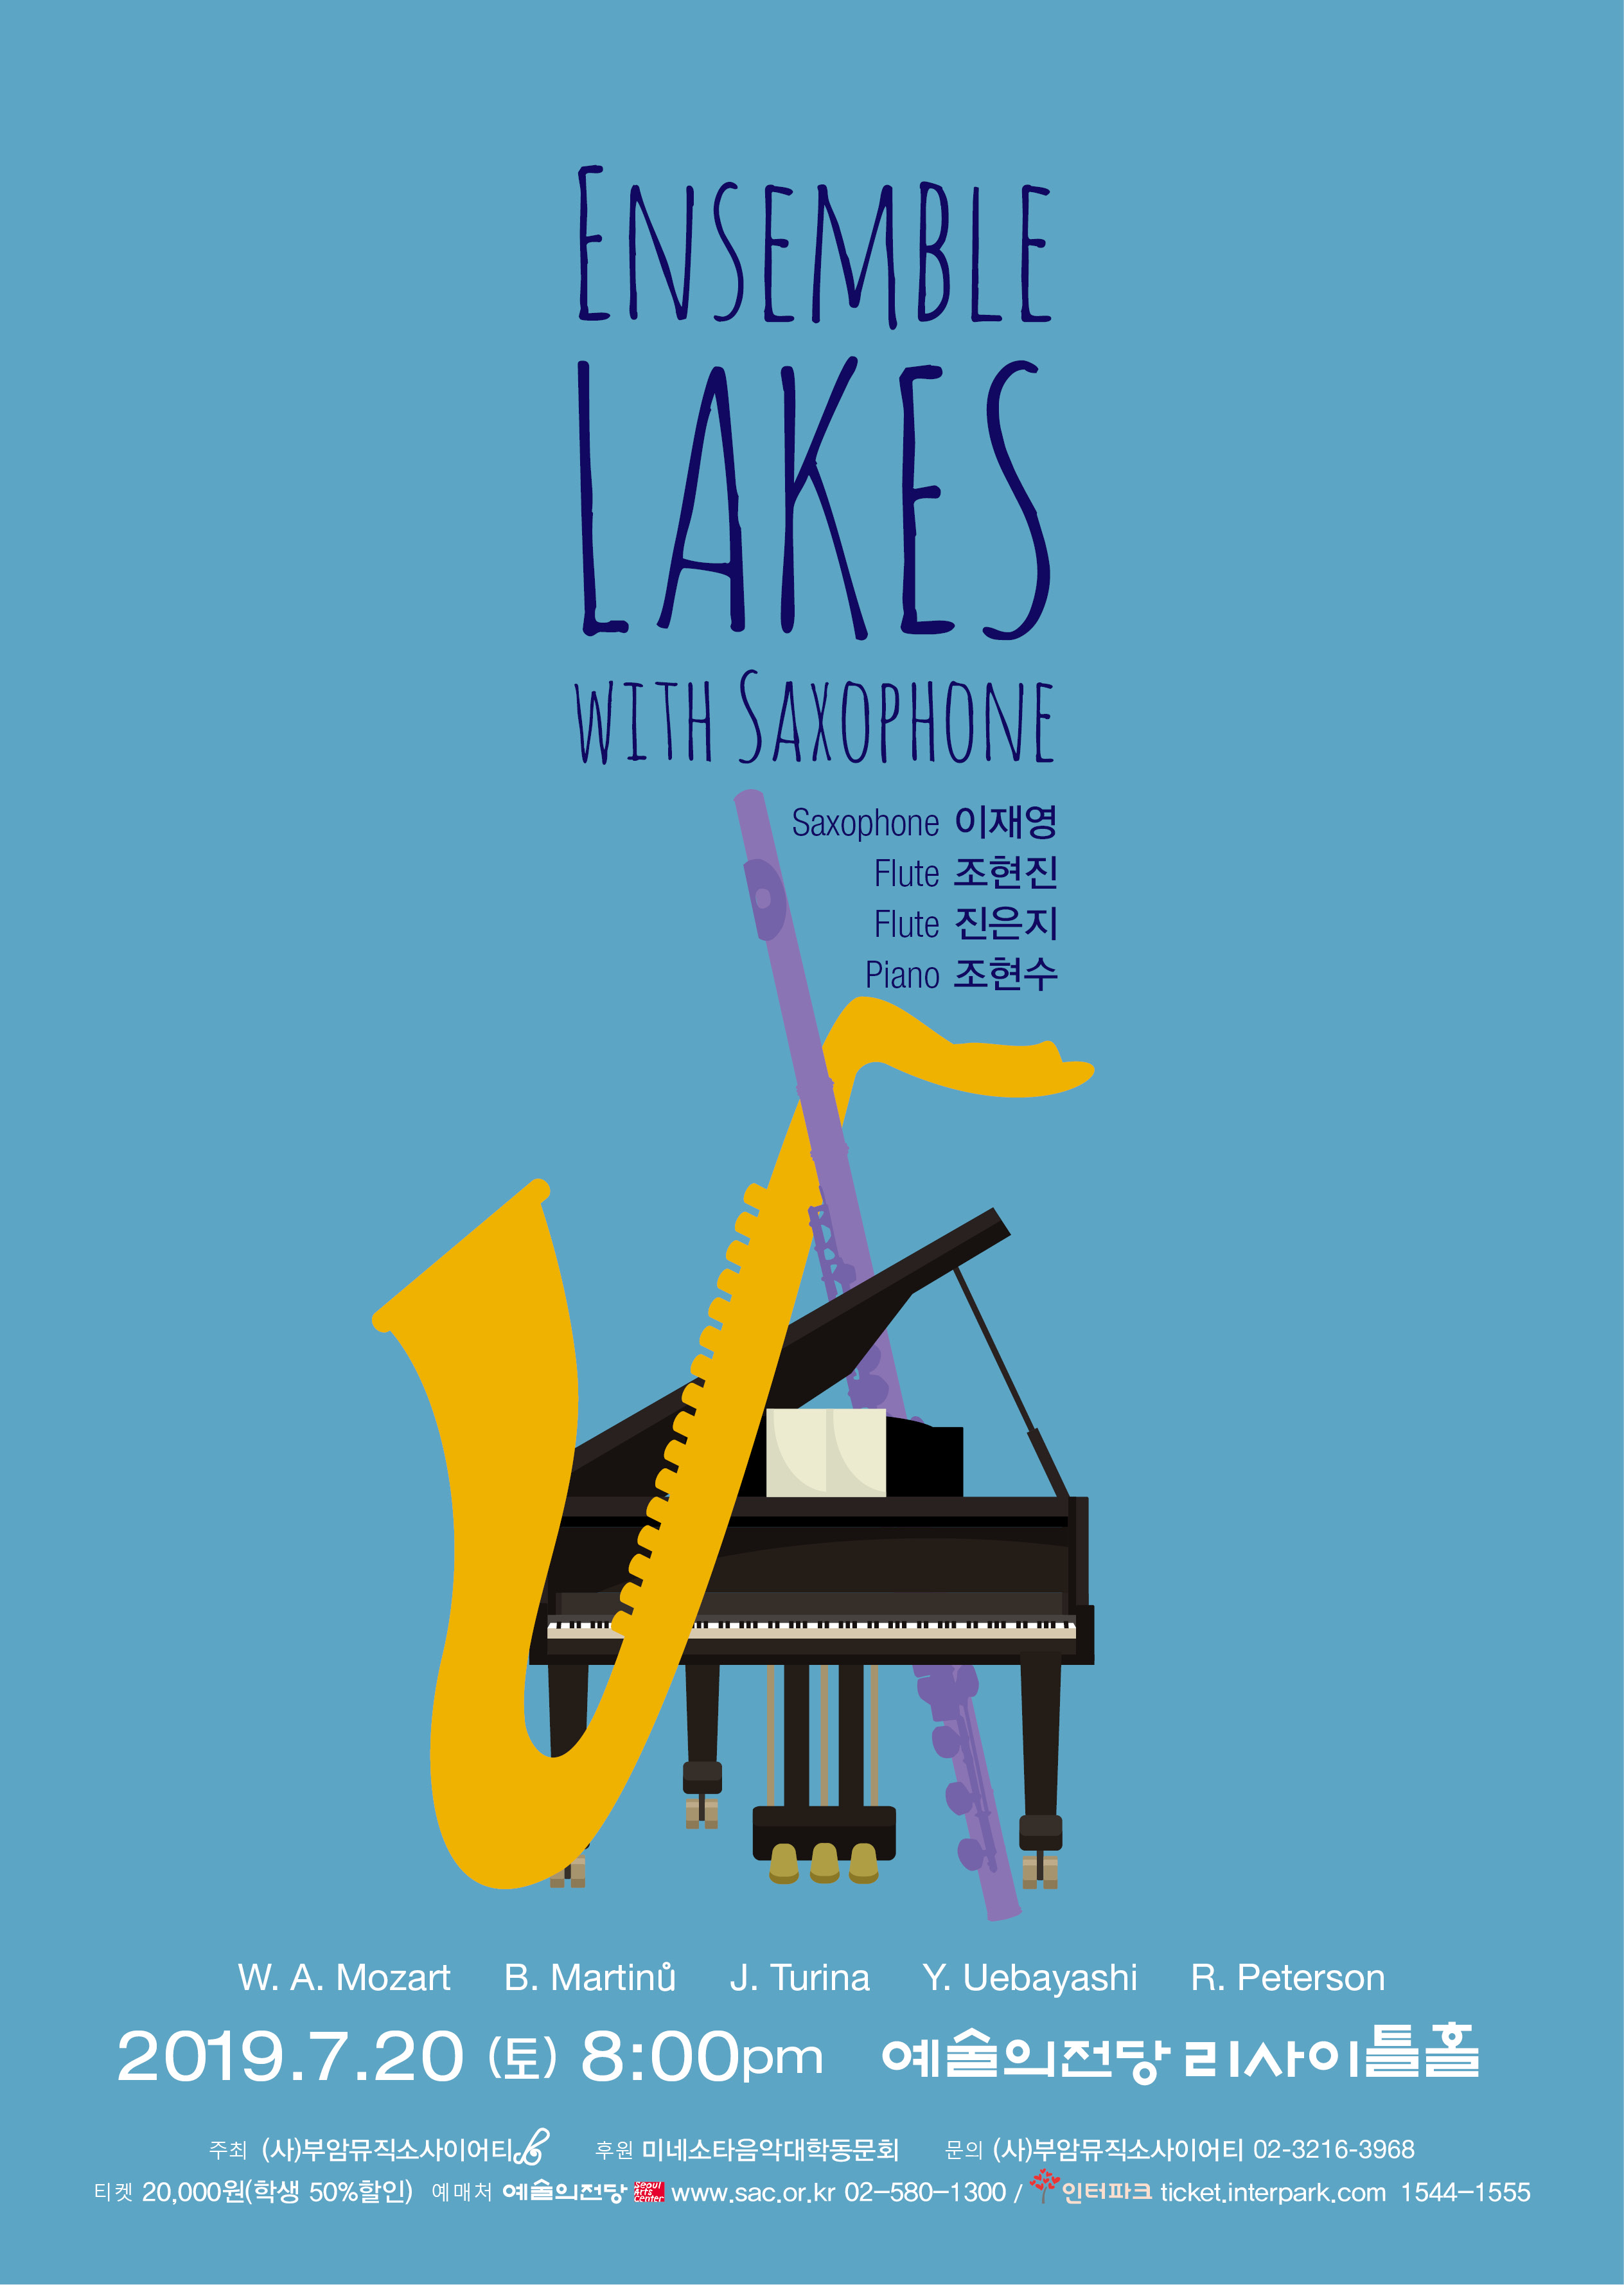 Ensemble Lakes (부제 : Ensemble Lakes with Saxophone) 이미지